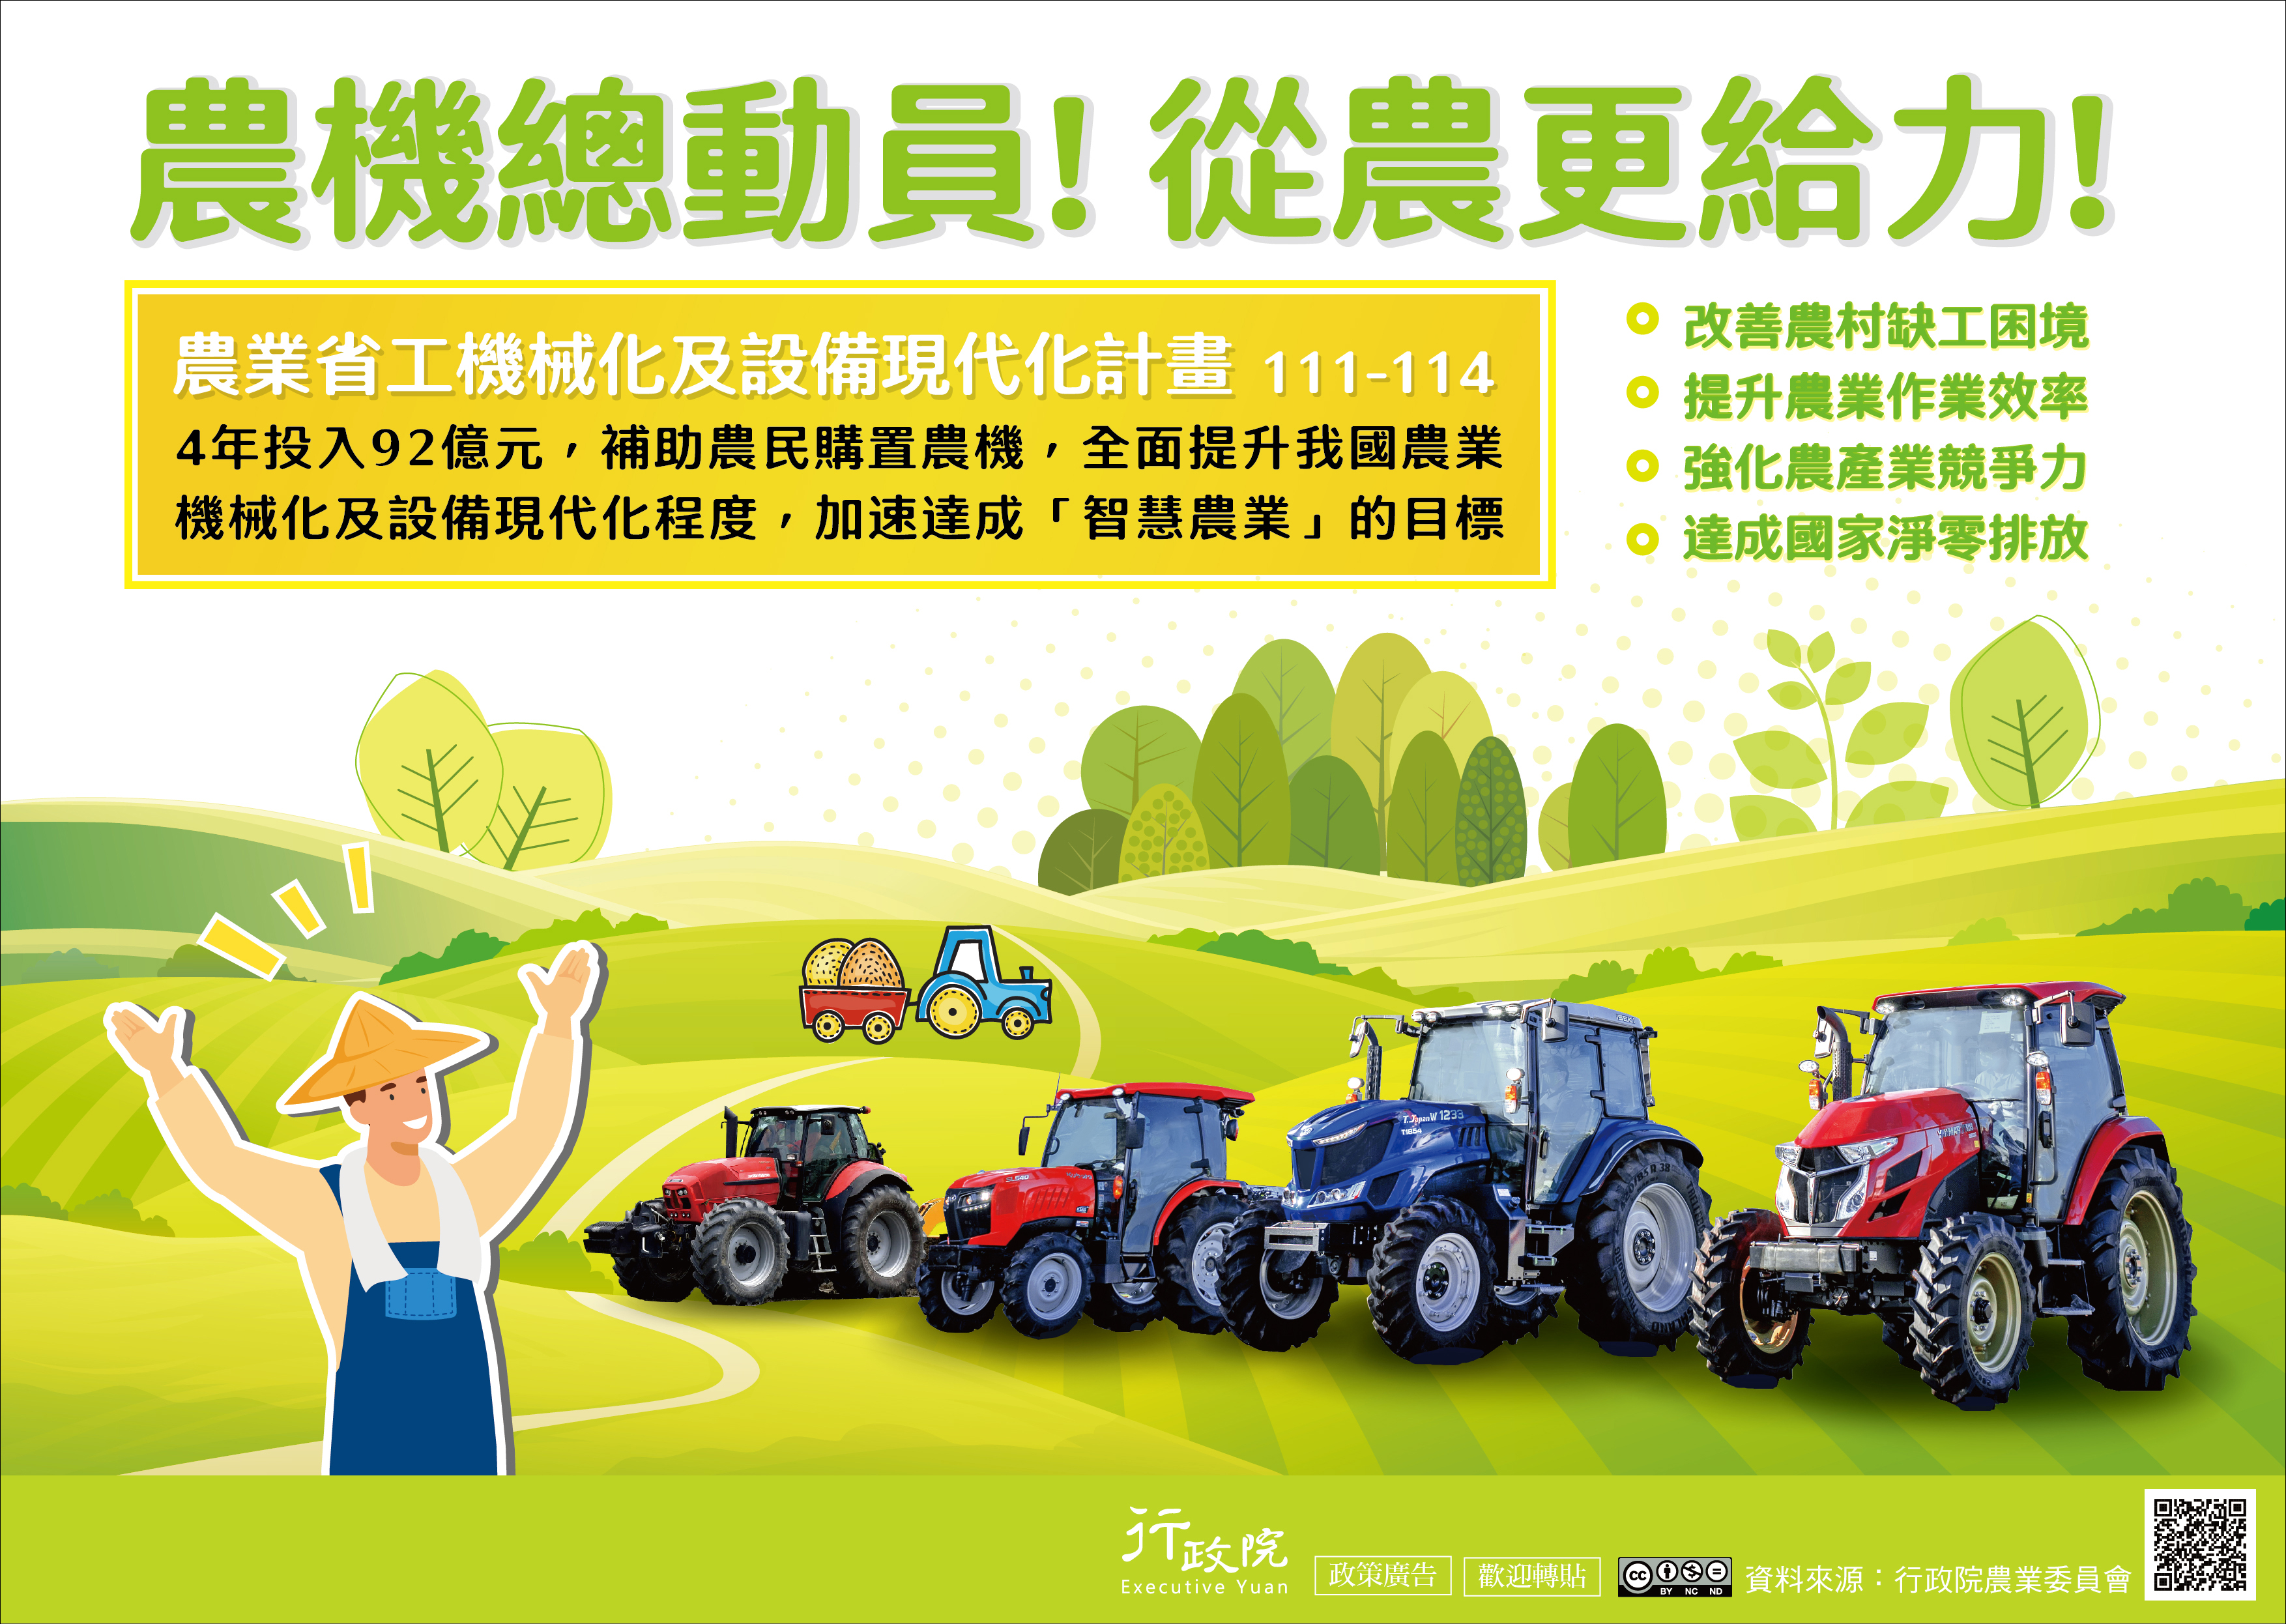 農業省工機械化與設備現代化政策說明